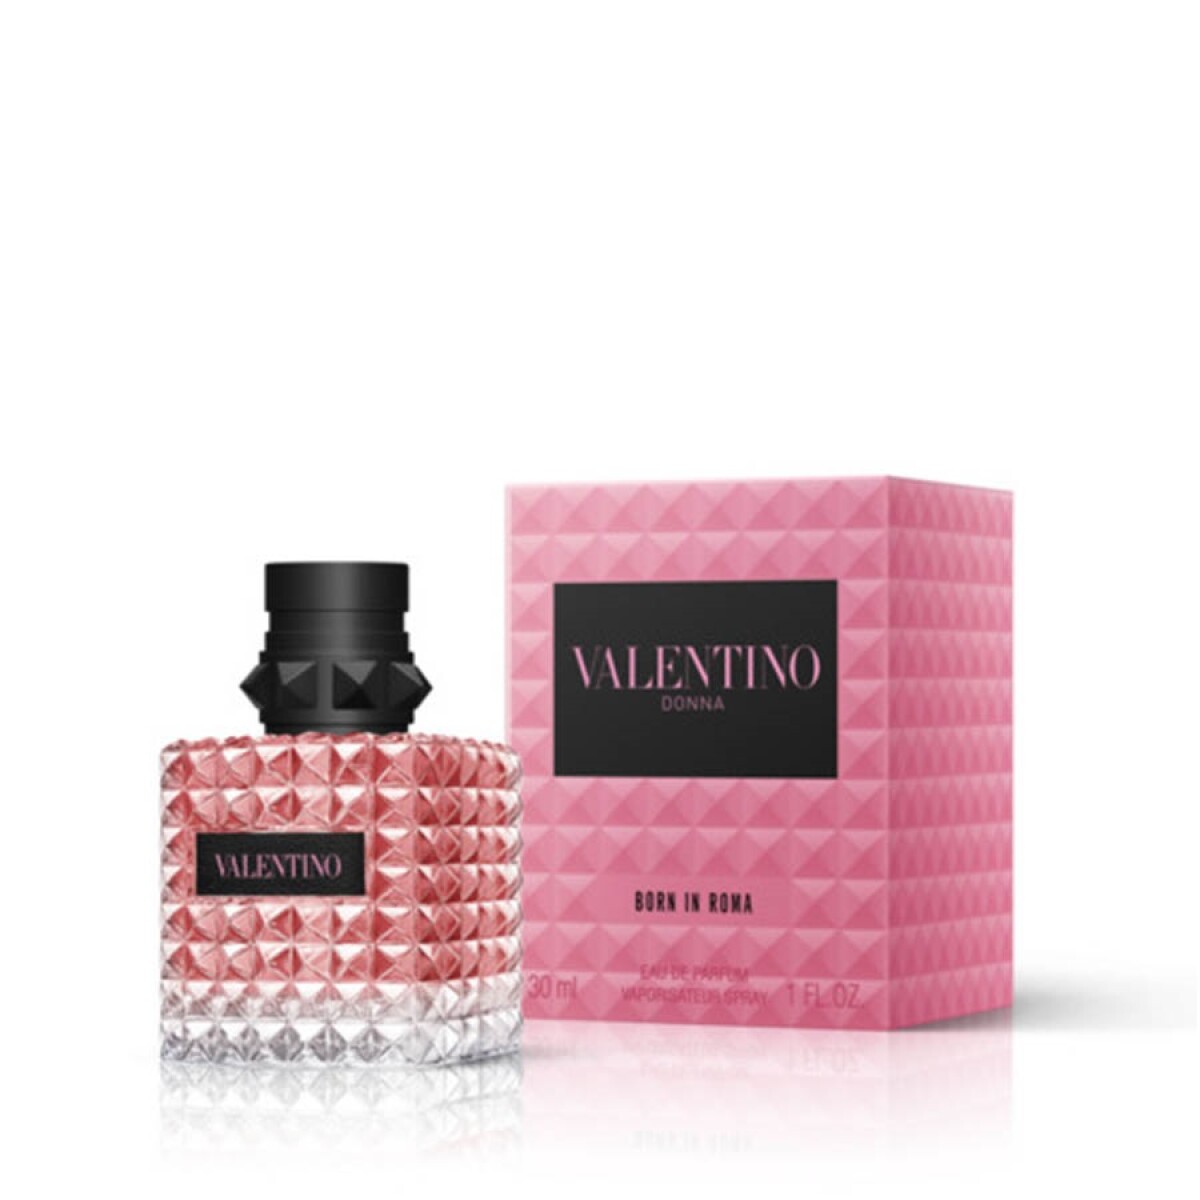 Perfume Valentino Born In Roma Donna Ed.ltda. 30 Ml. 